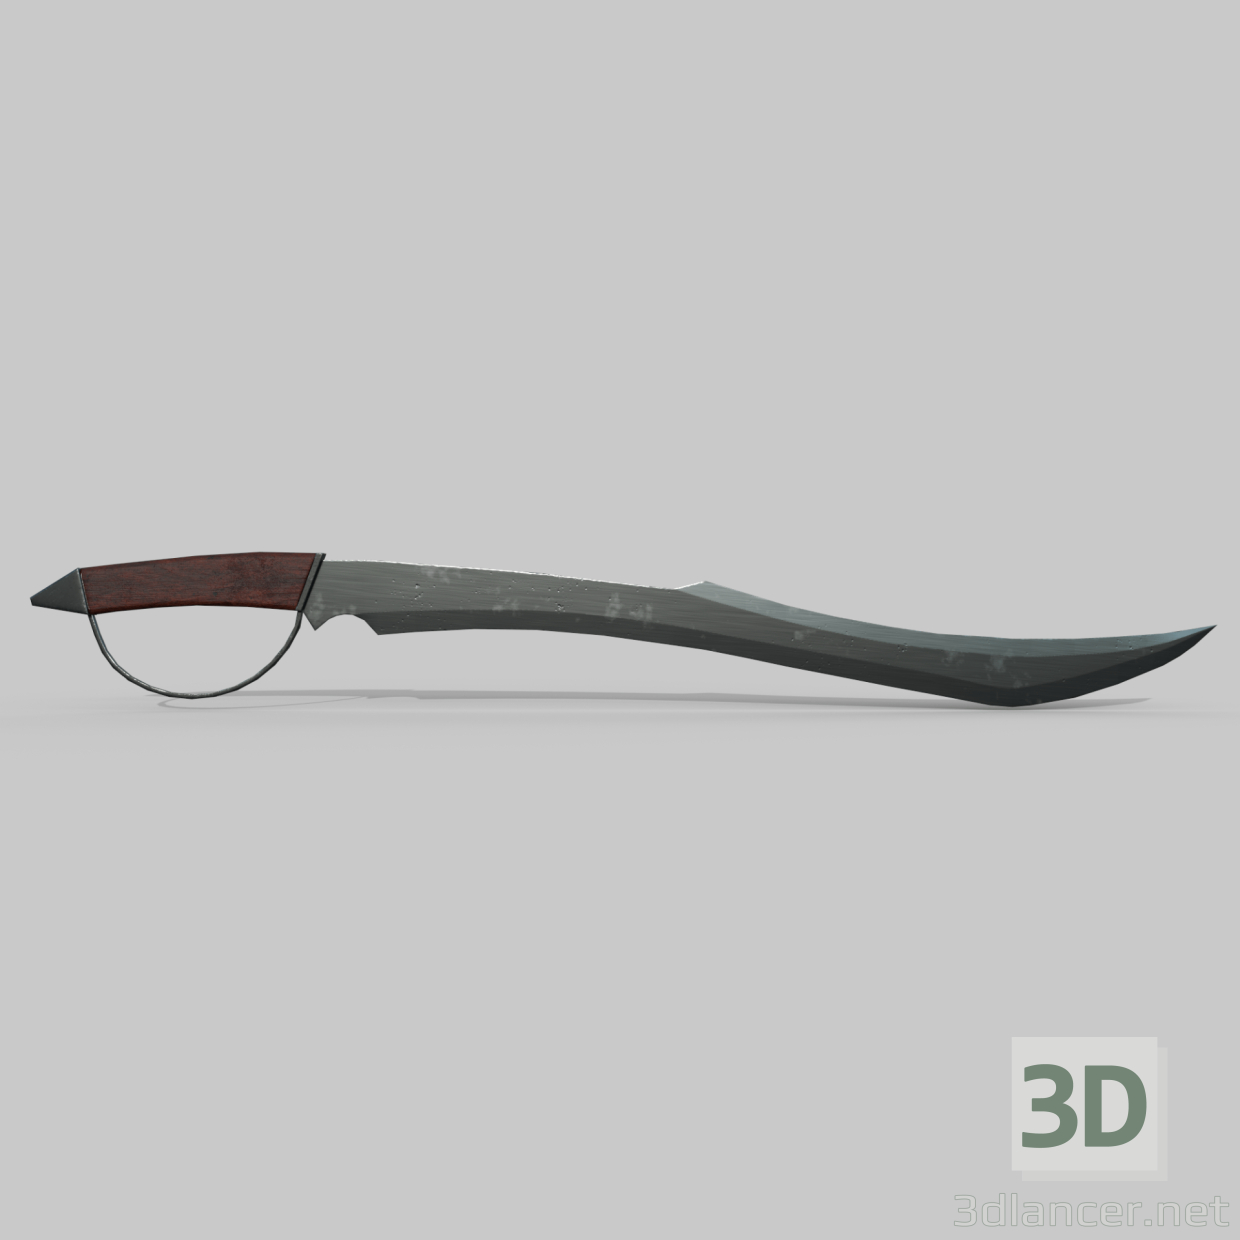 sable pirata 3D modelo Compro - render